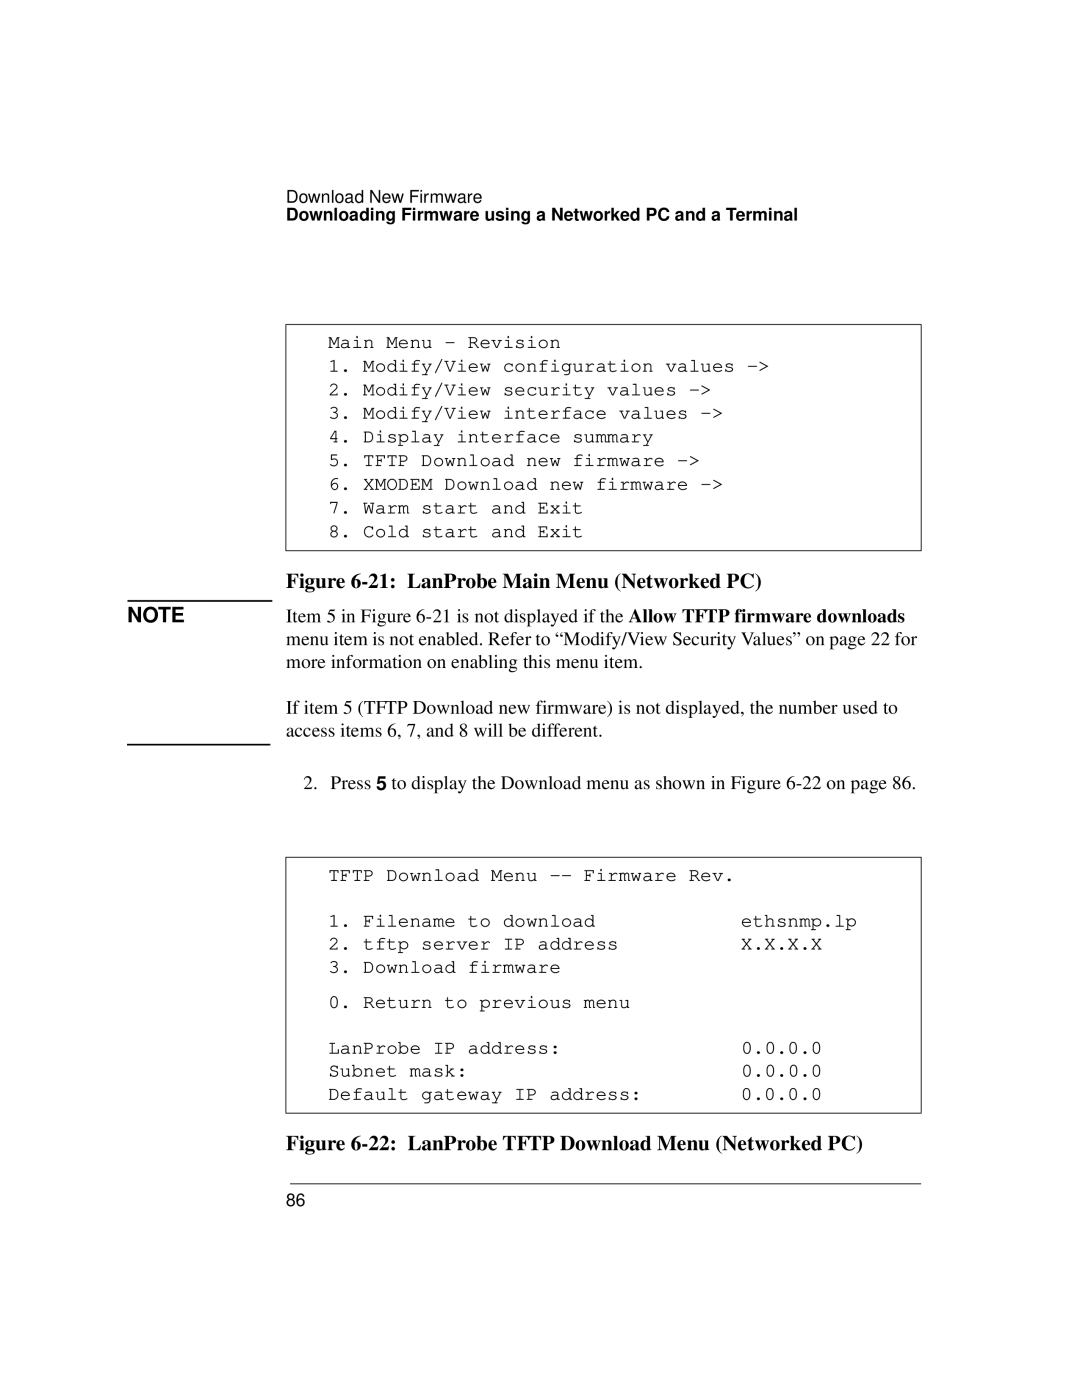 IBM 4986B LanProbe manual 21 LanProbe Main Menu Networked PC, 22 LanProbe TFTP Download Menu Networked PC 